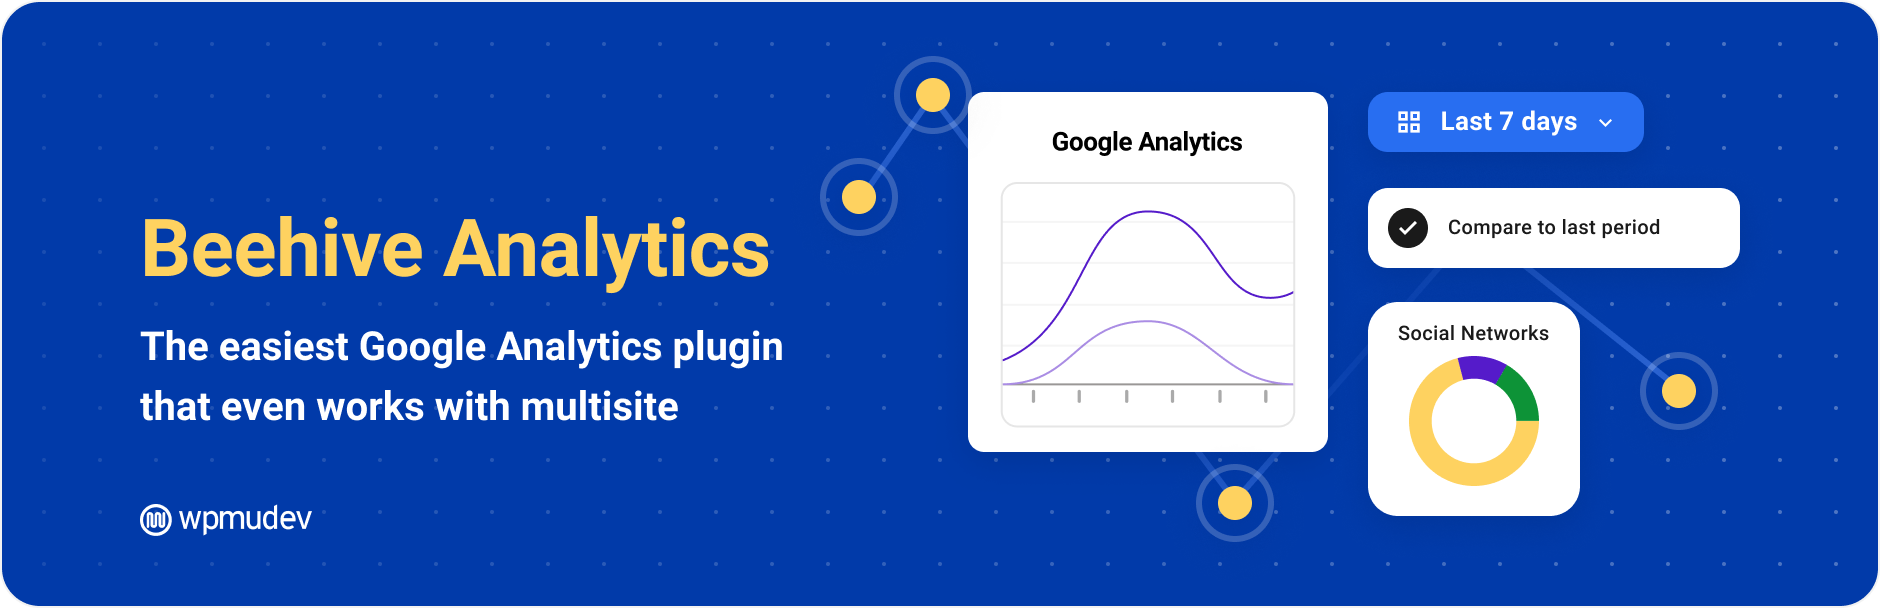 Beehive Analytics — Google Analytics Dashboard